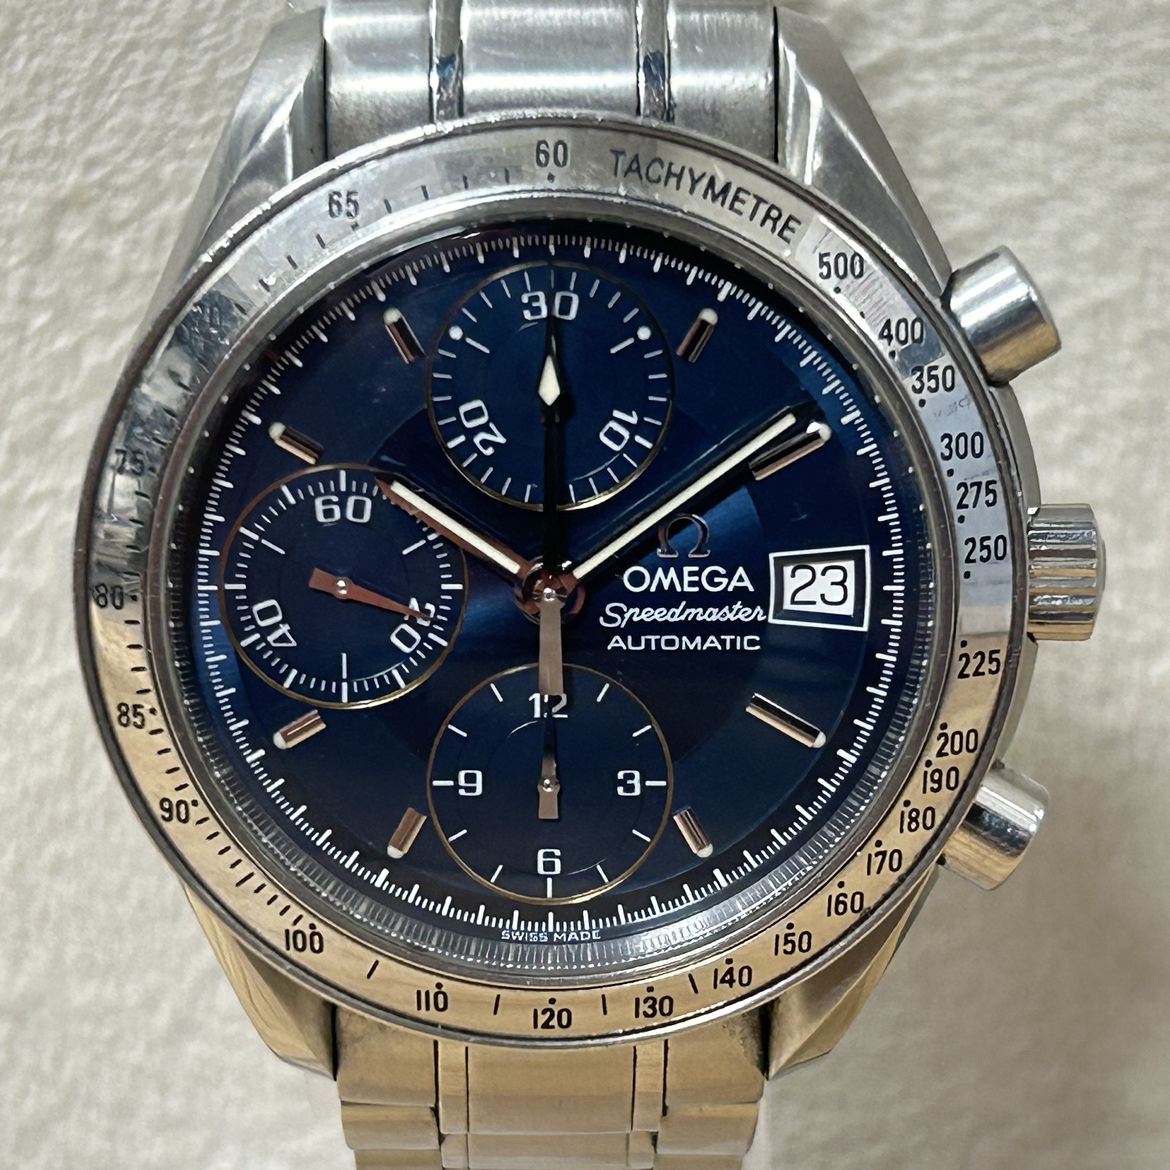 オメガの3513.80.00 スピードマスターデイト ステンレス 自動巻き腕時計の買取実績です。